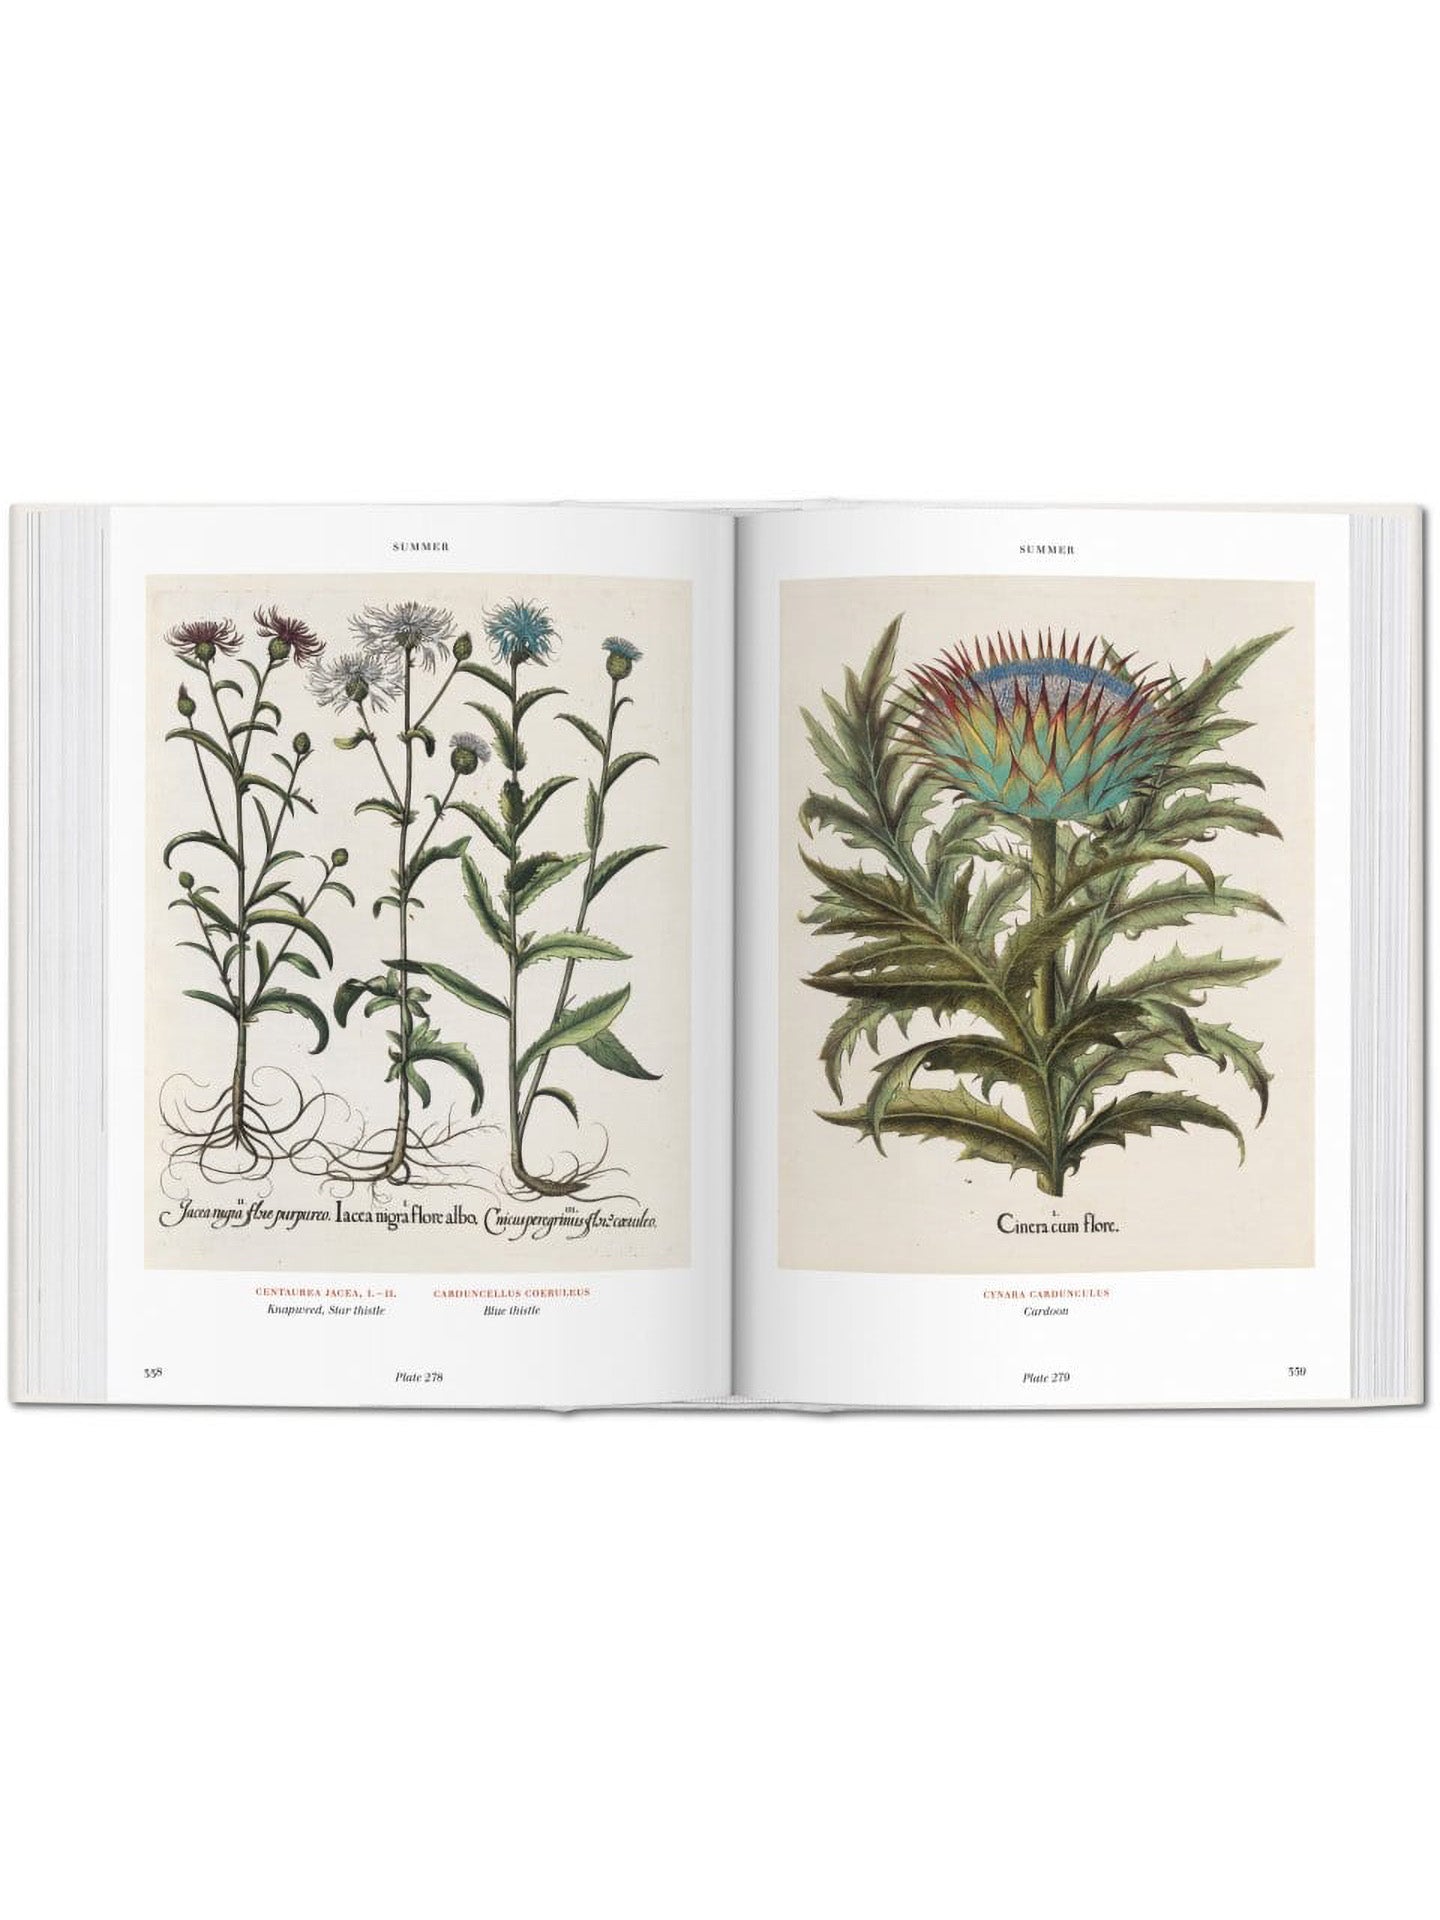 Florilegium – The Book of Plants